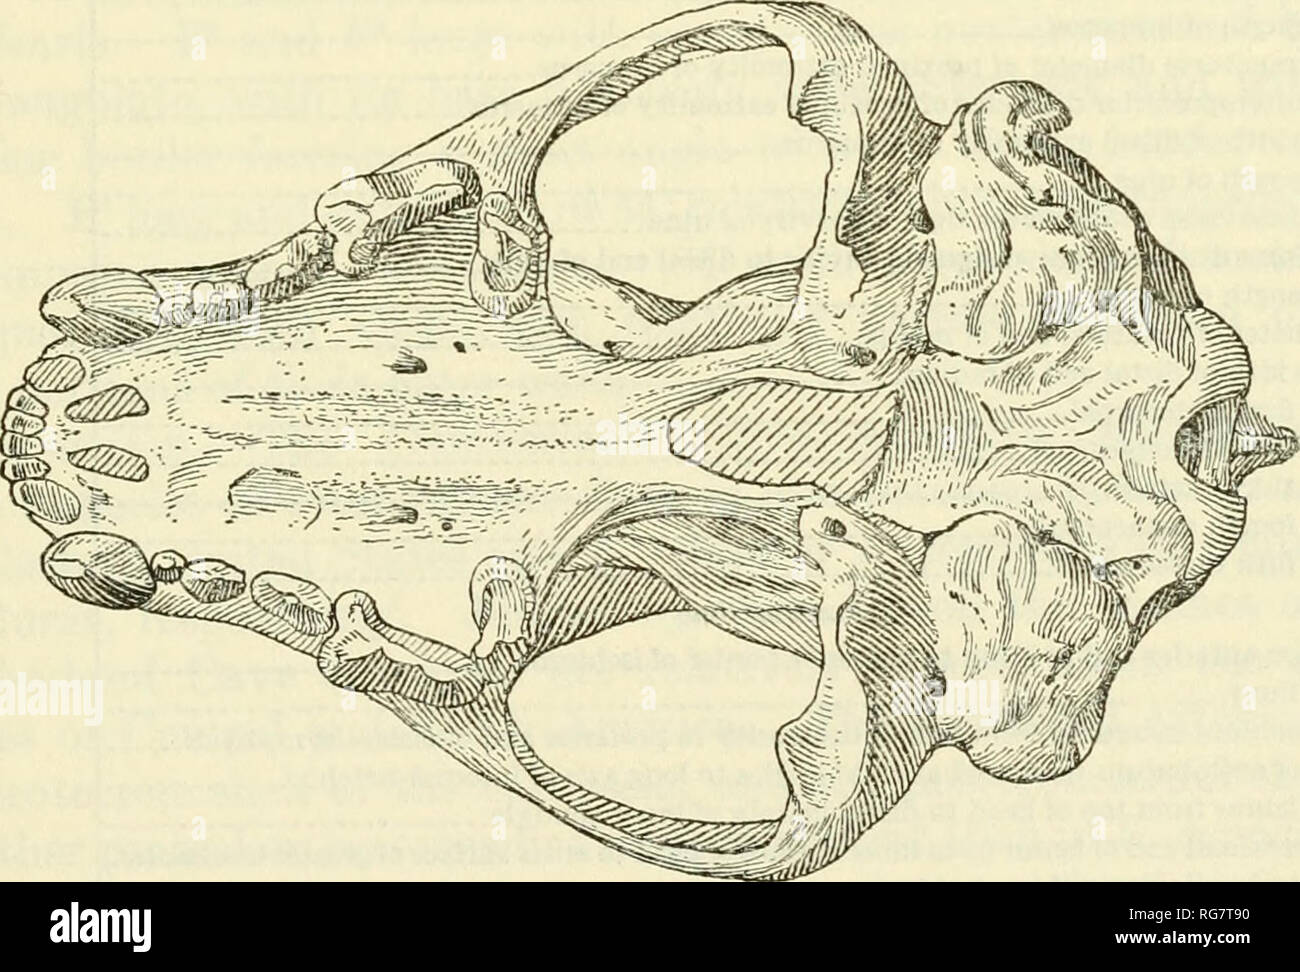 . Bollettino - Stati Uniti Museo Nazionale. La scienza. PiGURK 20.-Gwio gidleyi Hall: cranio (U.S.N.M. n. 8174), dorsale e ventrale di vista. Due terzi di dimensioni naturali. moderno campione di Gulo luscus. I condili occipitale in n. 8174 sono vicini e il foramen magnum è corrispondentemente ridotto. Purtroppo la regione occipitale è assente in altre porzioni del cranio da Cumberland grotta, ma la distanza tra i condili lQ' esemplari vivi di G. luscus varia in misura sufficiente per includere la condizione visibile in n. 8174.. Si prega di notare che queste immagini vengono estratte dalla pagina sottoposta a scansione immagini che ma Foto Stock